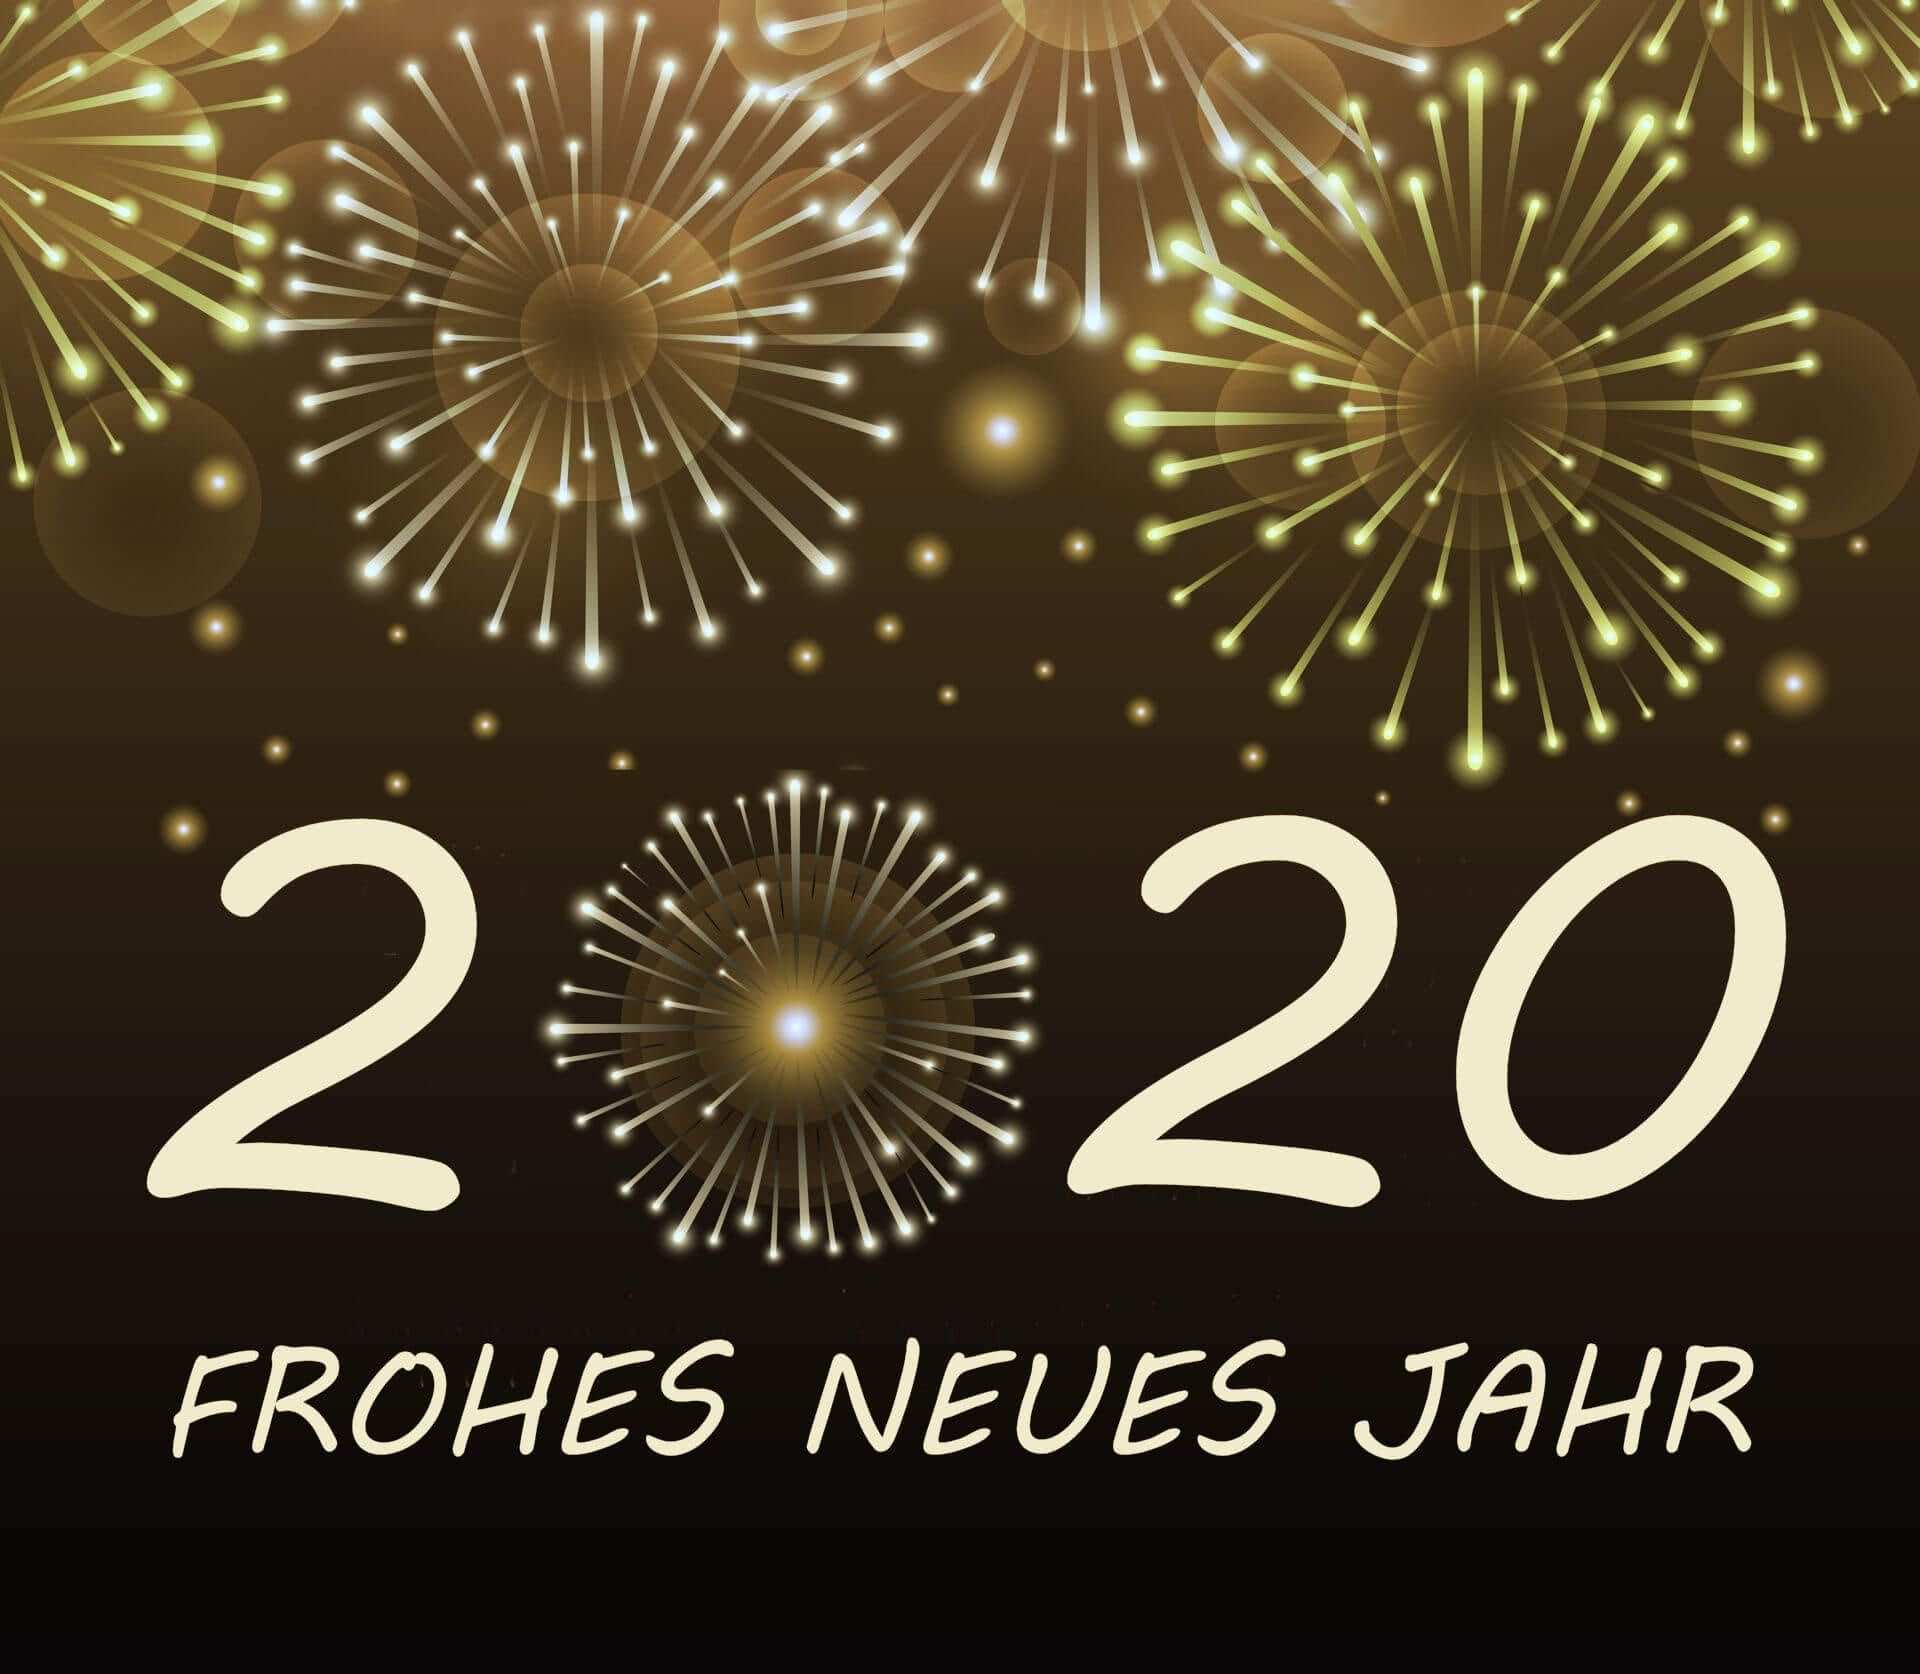 Neujahrswunsche 2020 In Englischer Sprache Neujahrswunsche 2020 In Englischer Sprache Neujahrswunsche 2020 I Neujahrswunsche Neujahr Silvester Gluckwunsche